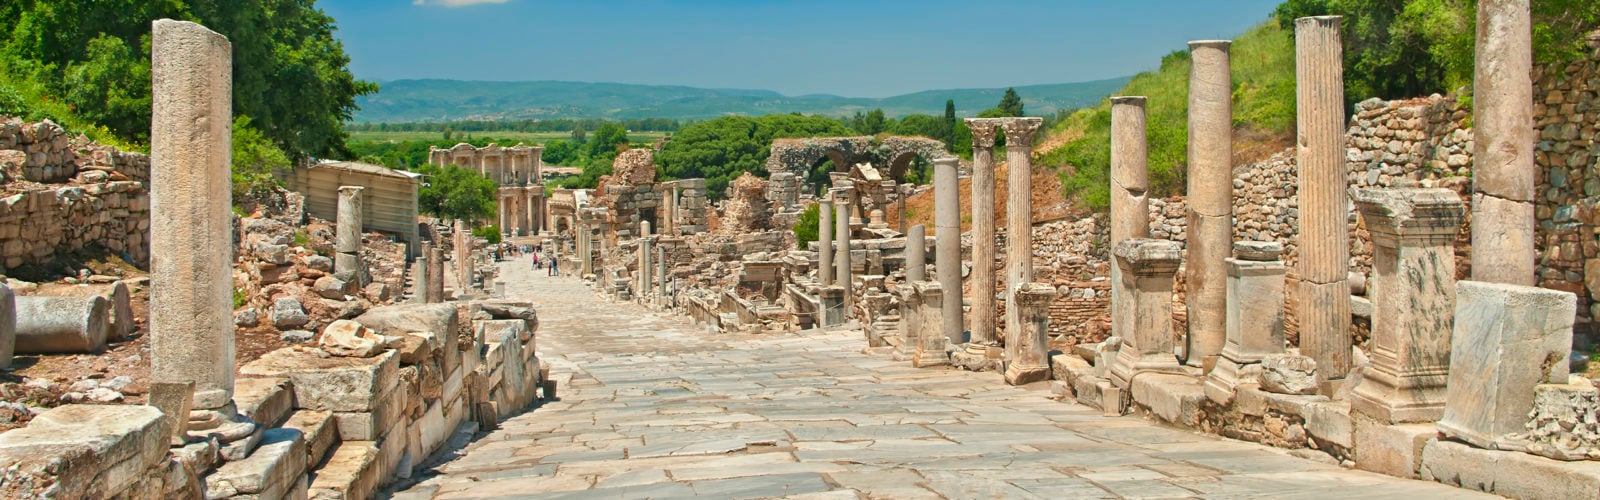 Ancient Greek alley in Ephesus